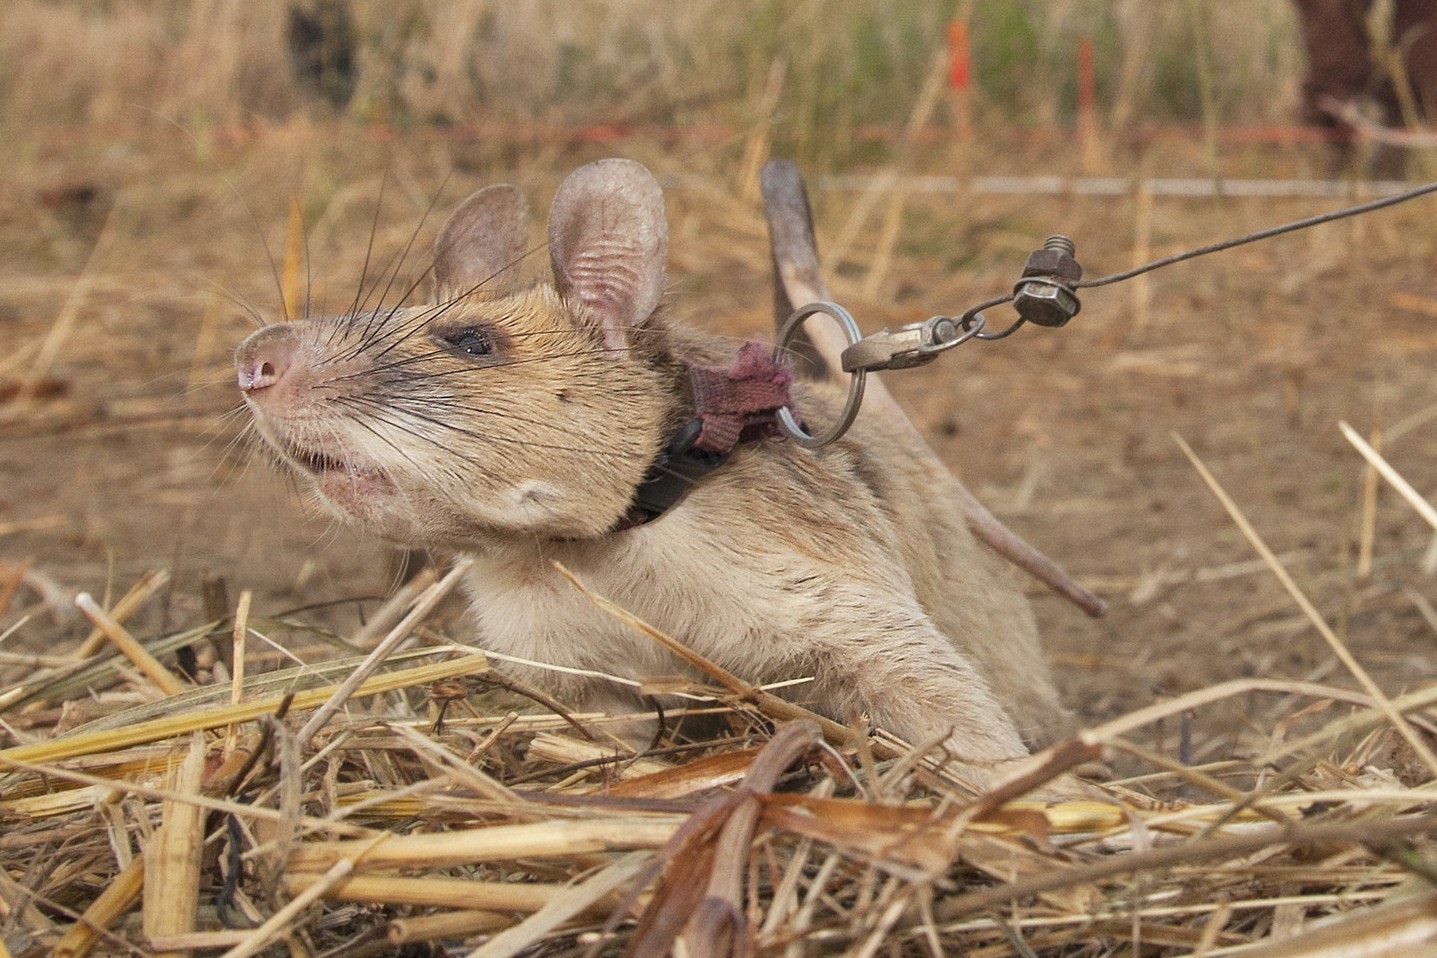 Magawa the rat at work detecting landmines